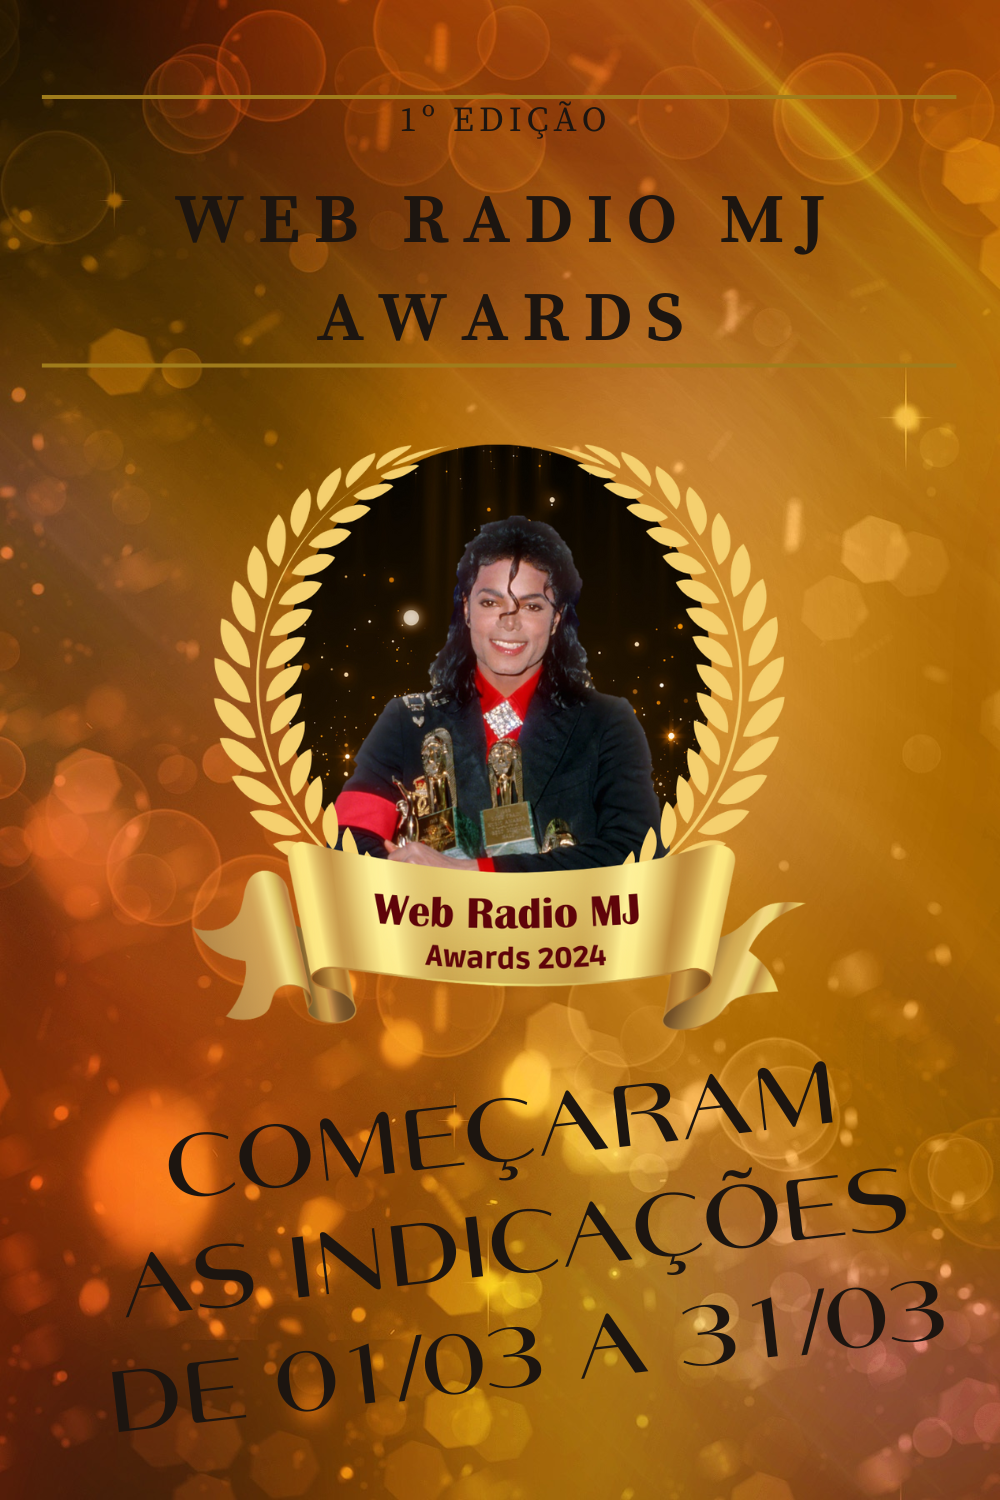 Web Radio MJ Awards aaa